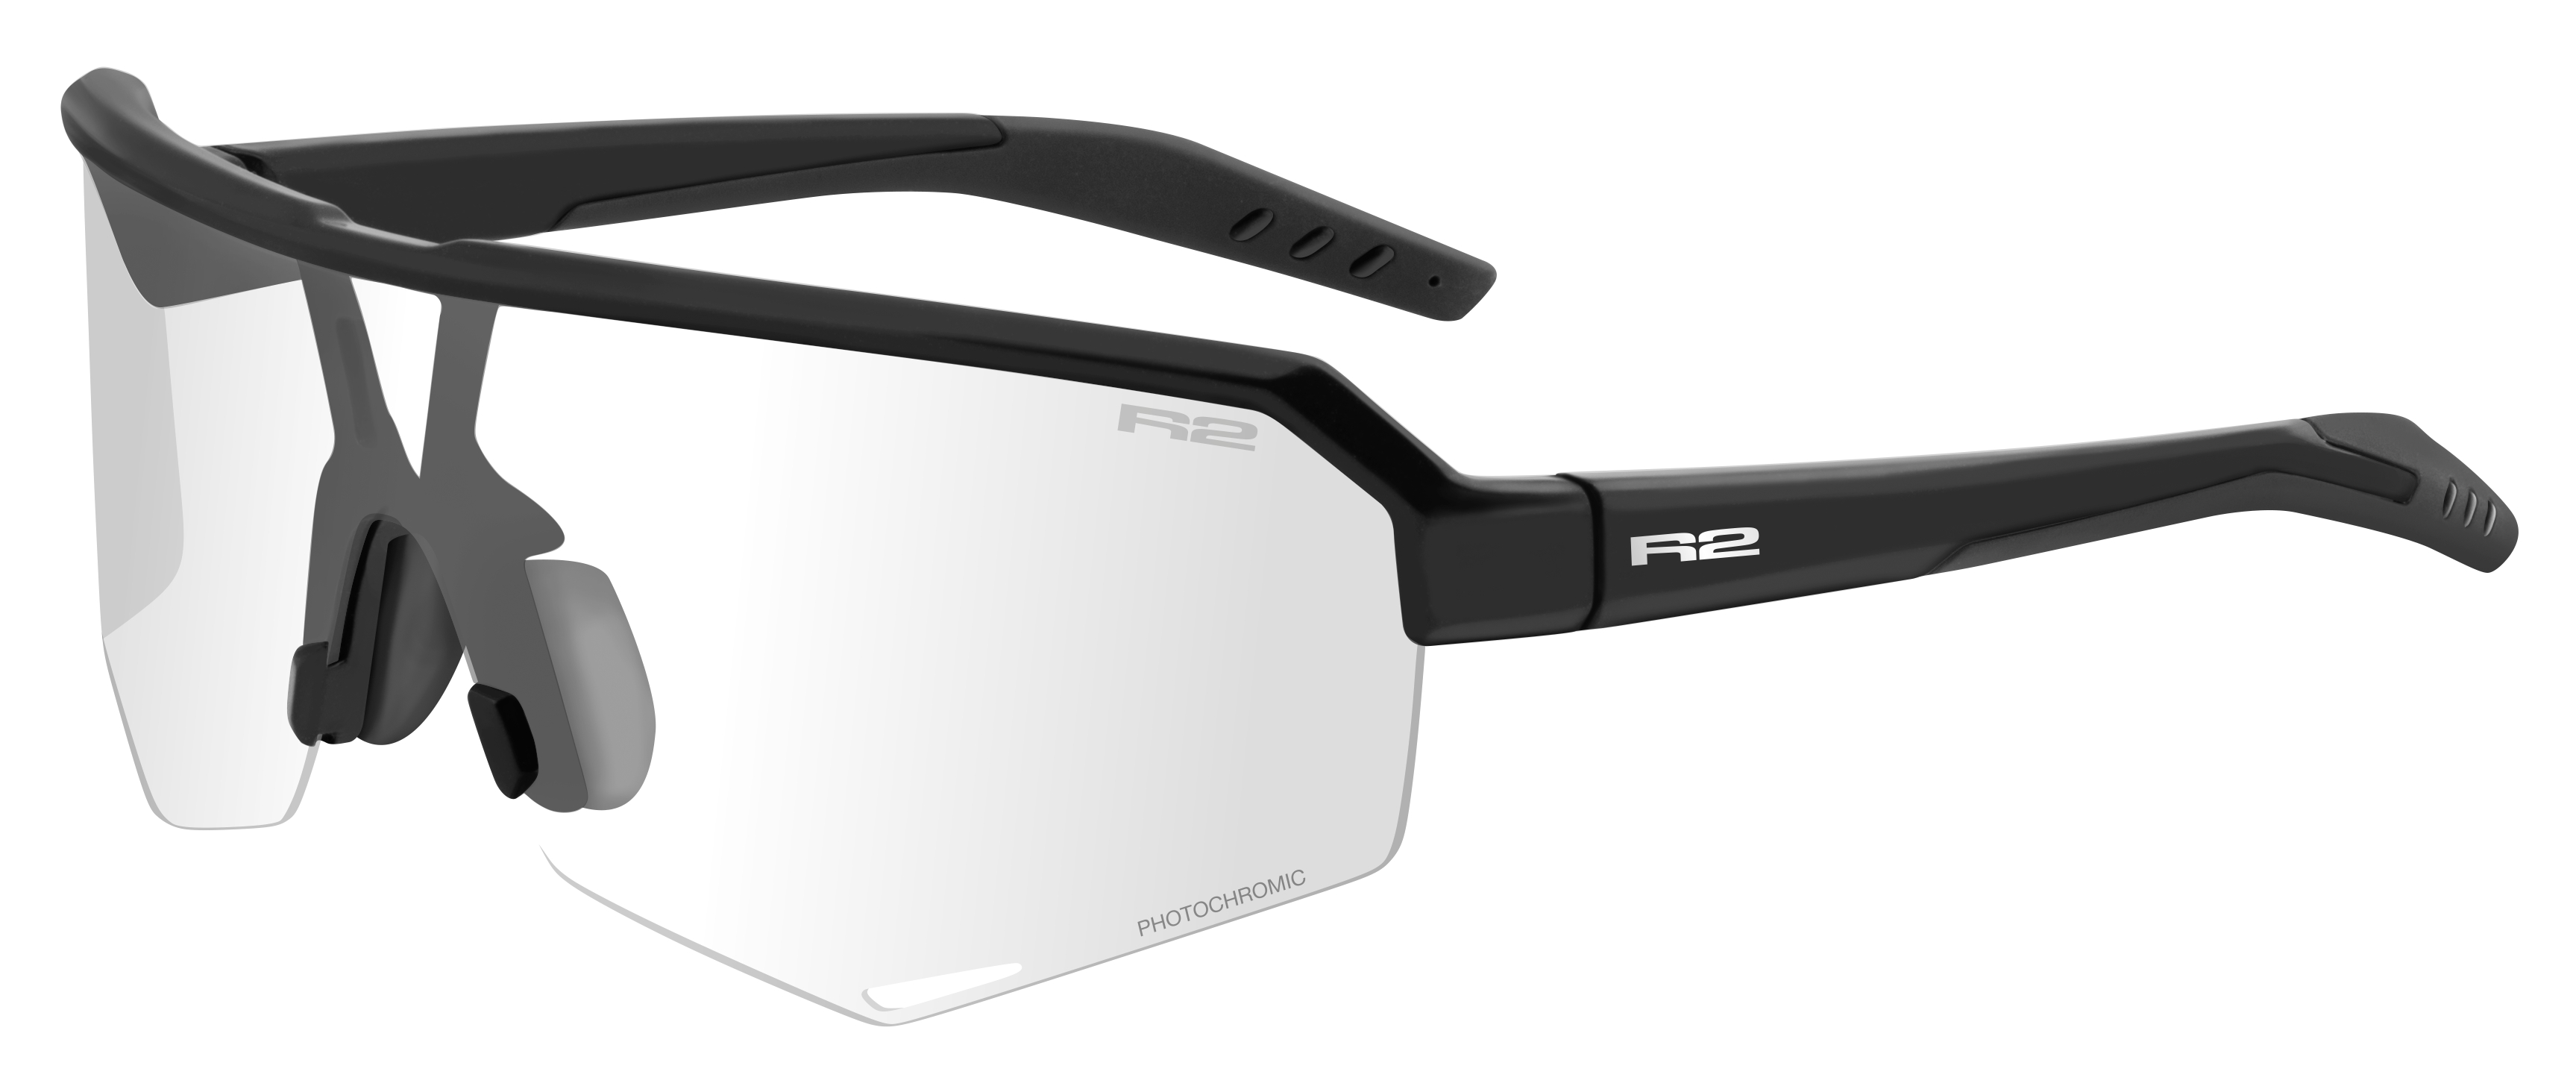 Photochromatic sunglasses  R2 FLUKE AT100N standard